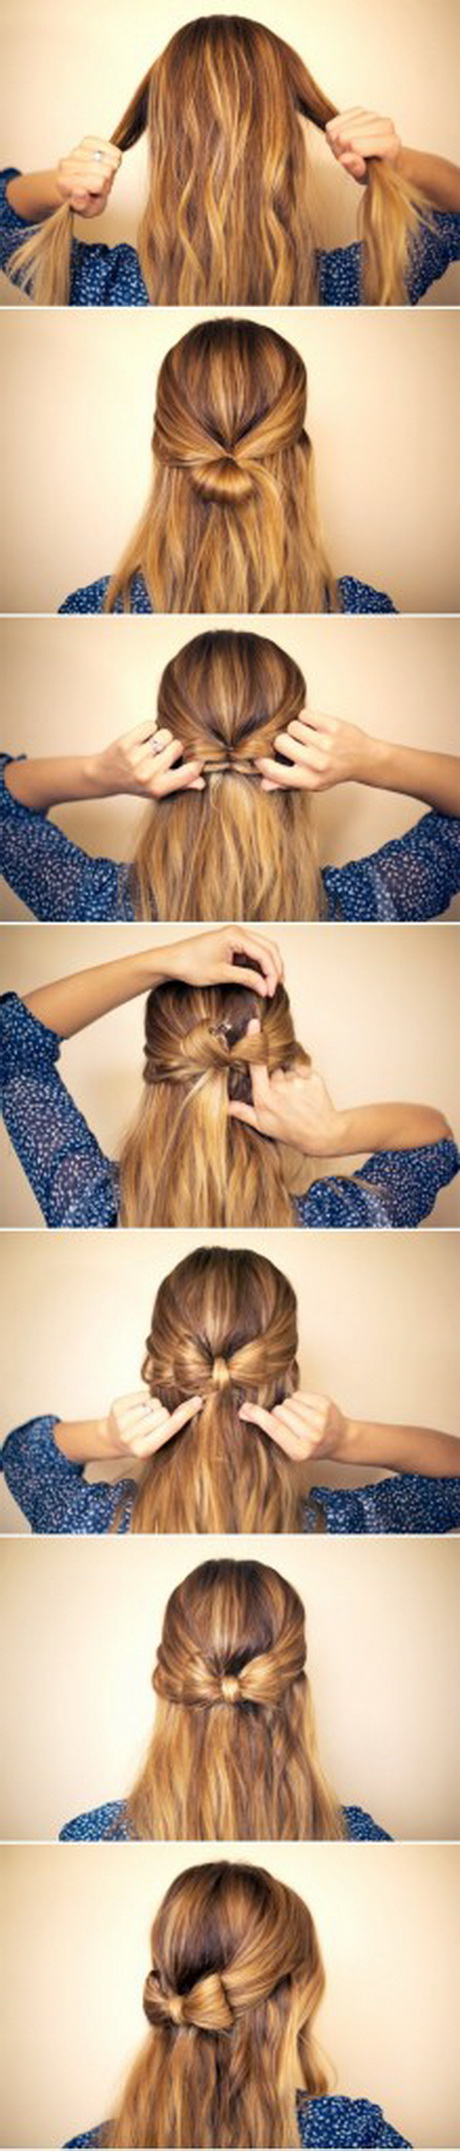 peinados-para-diario-pelo-largo-01-14 Peinados para diario pelo largo